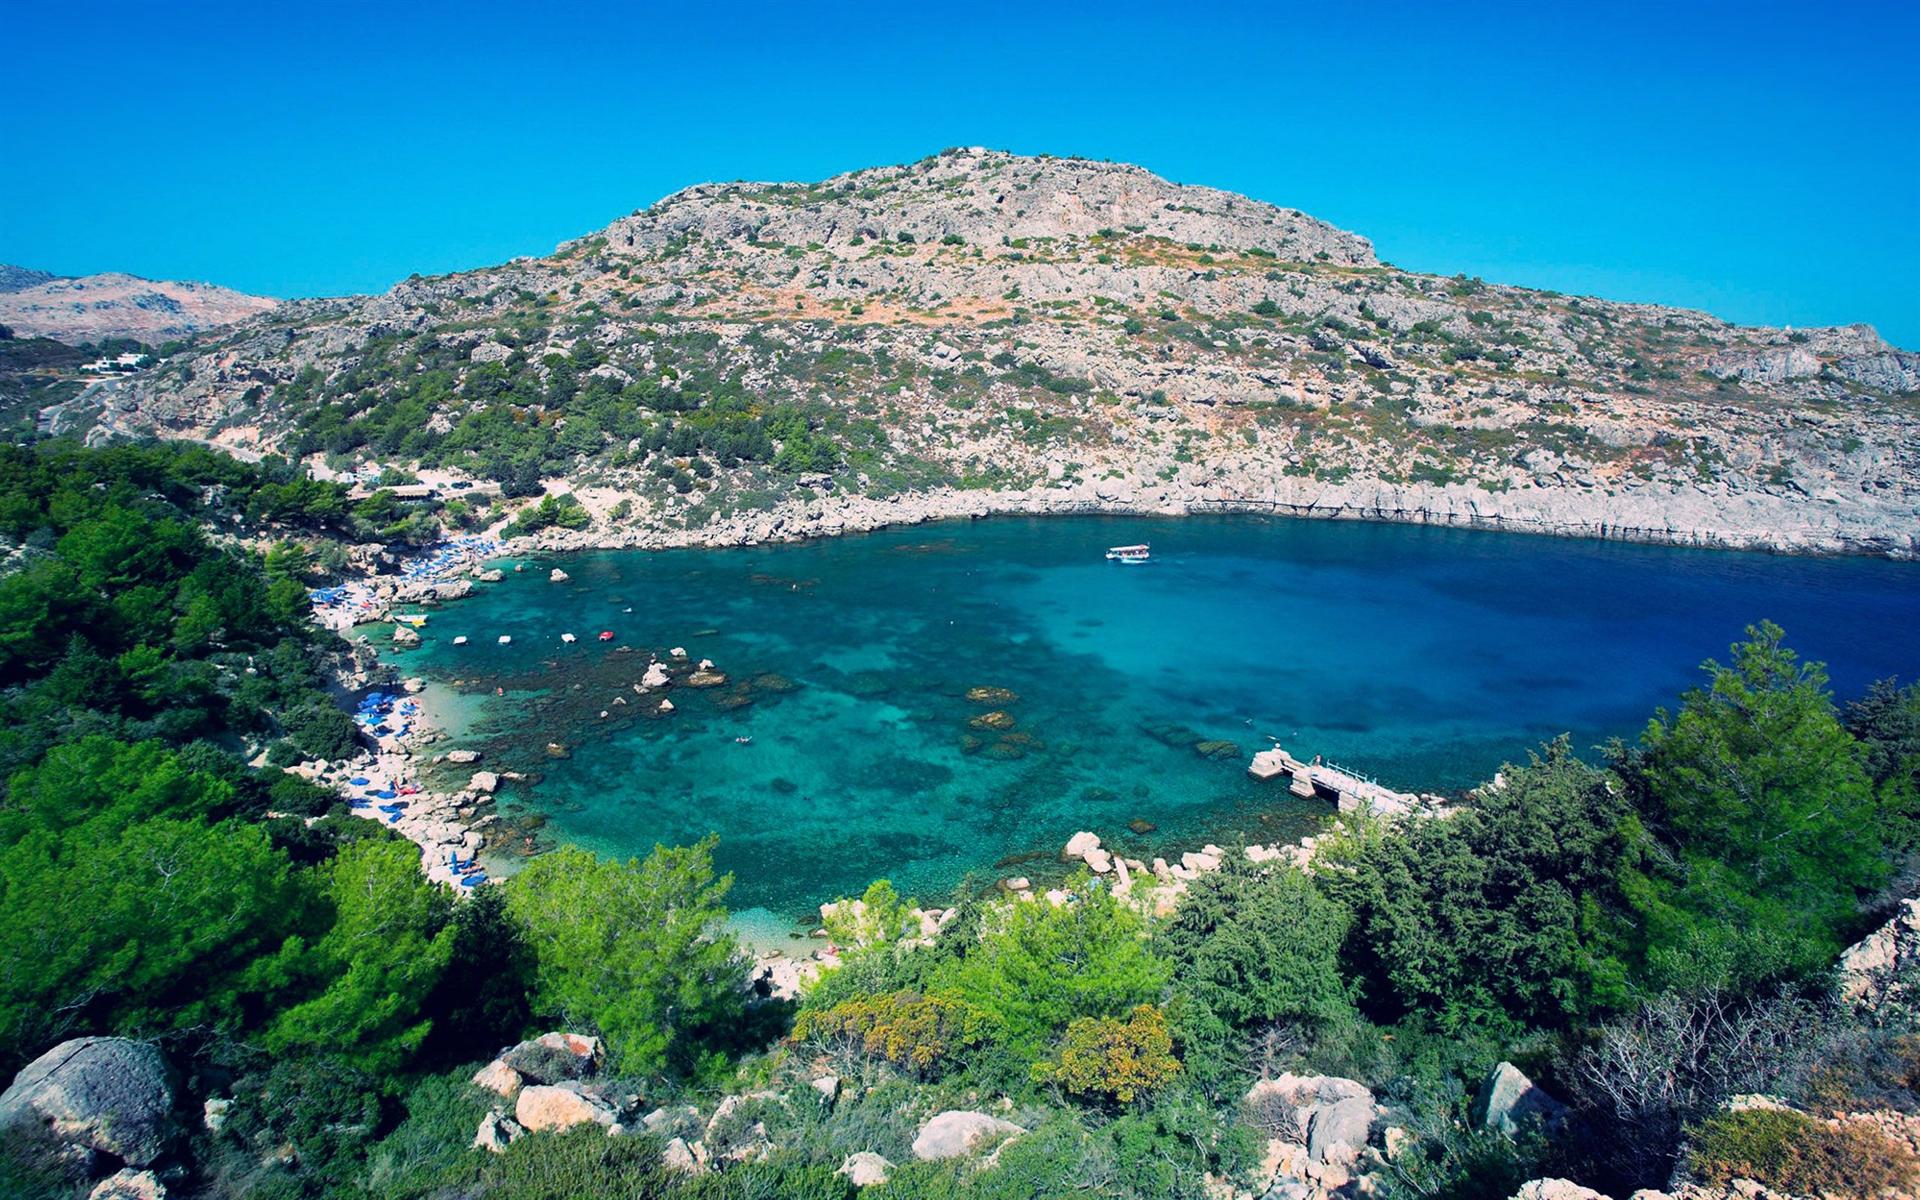 Khám phá vẻ đẹp của vịnh Quinn của hòn đảo Rhodes ở Hy Lạp thông qua bức ảnh cực kỳ đẹp này. Khung cảnh nơi đây sẽ khiến bạn cảm thấy như mình đang có mặt tại đó ngay lập tức, với bầu trời xanh, nước biển trong veo và vách đá hoang sơ.